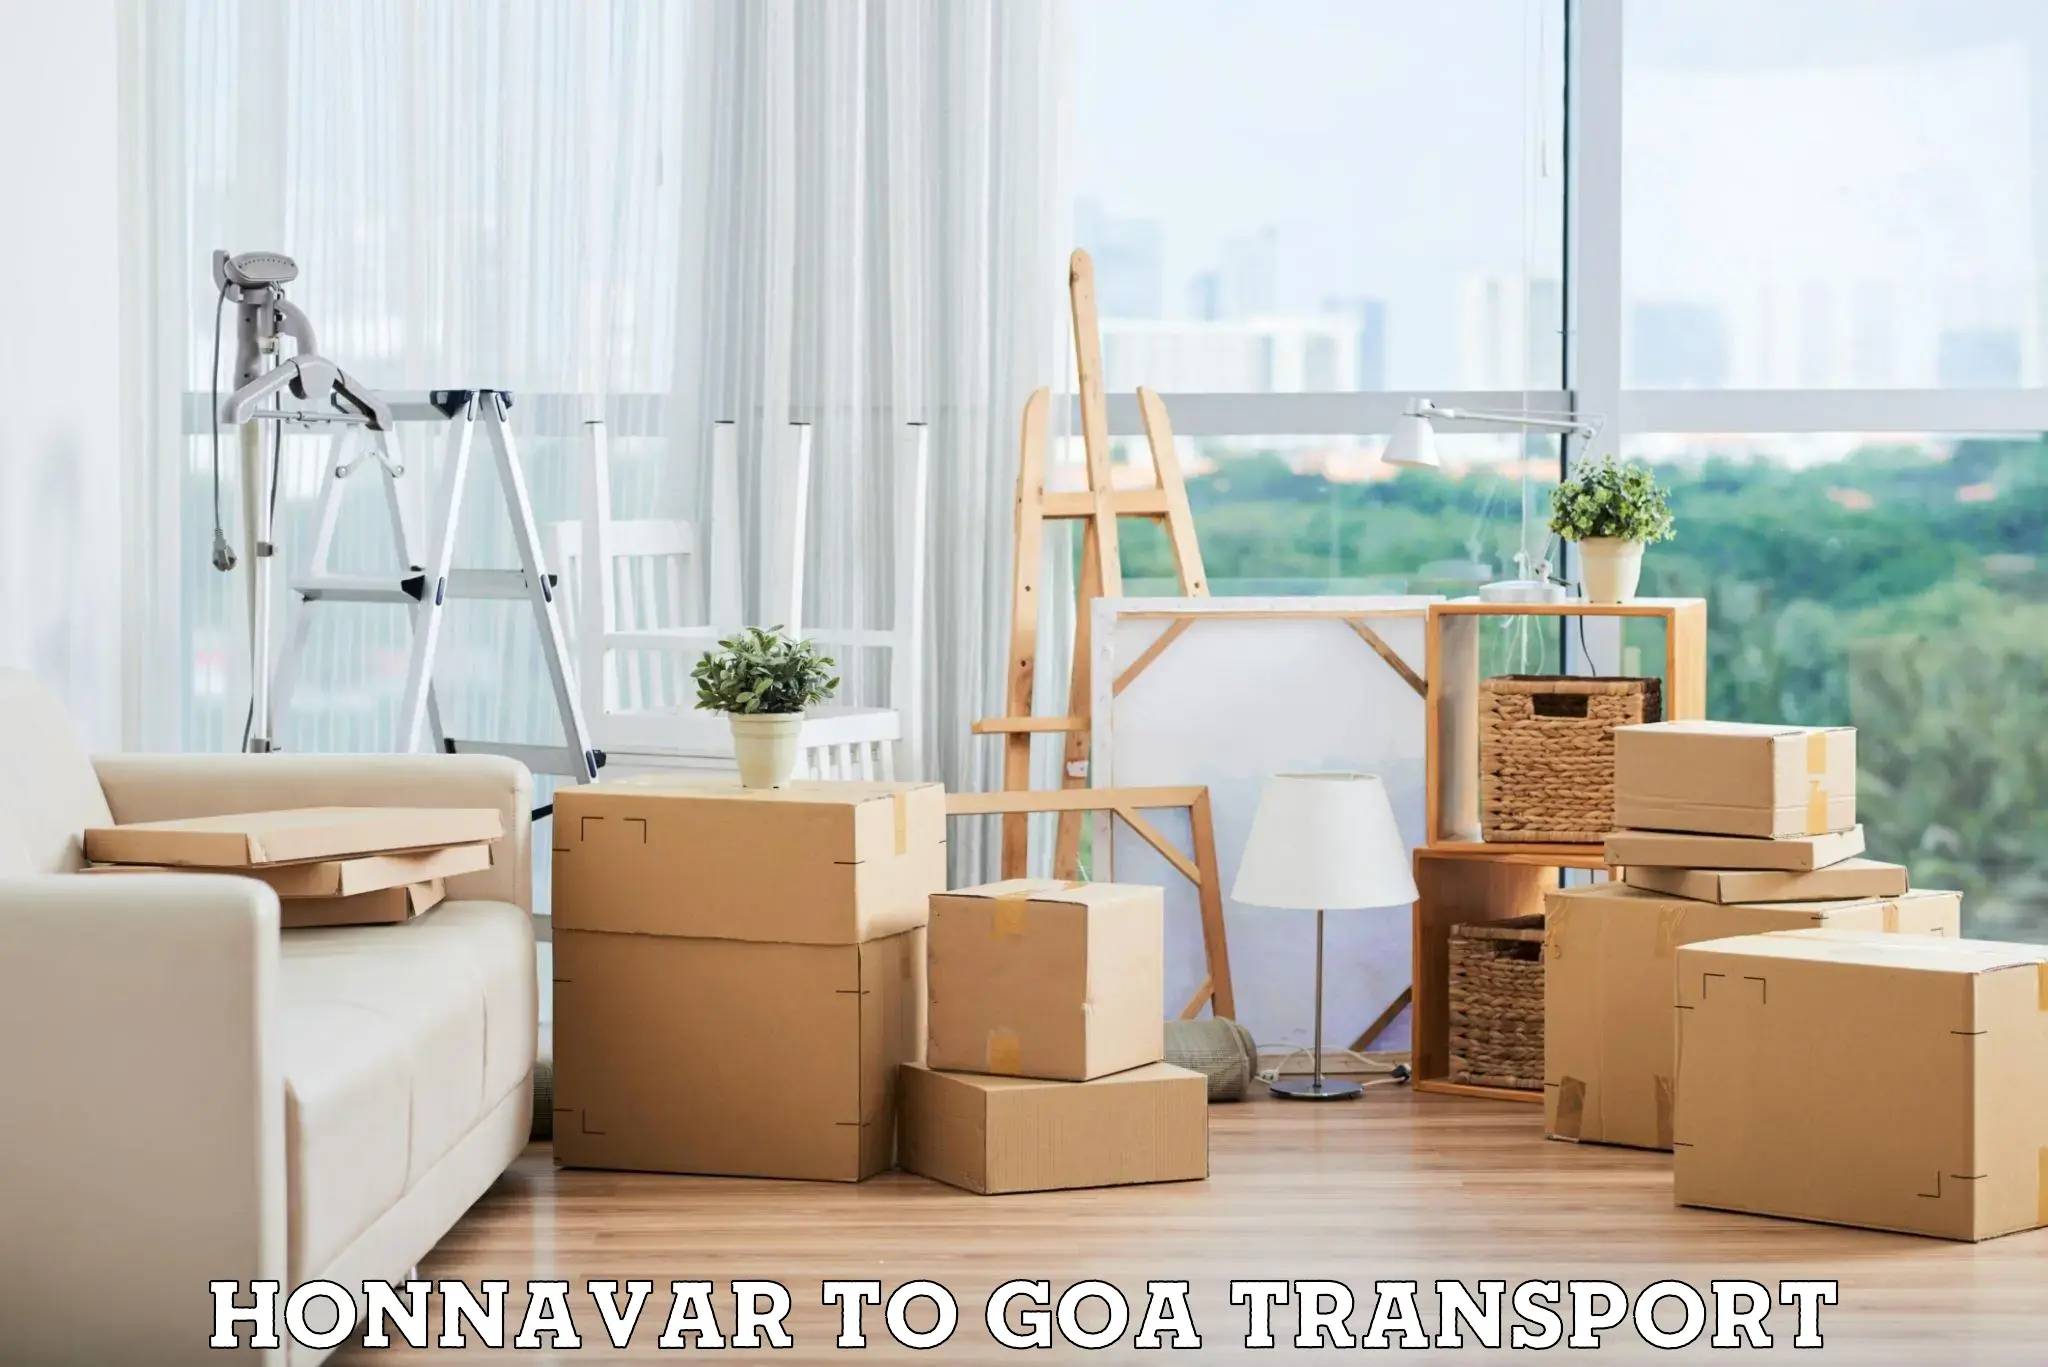 All India transport service Honnavar to Canacona